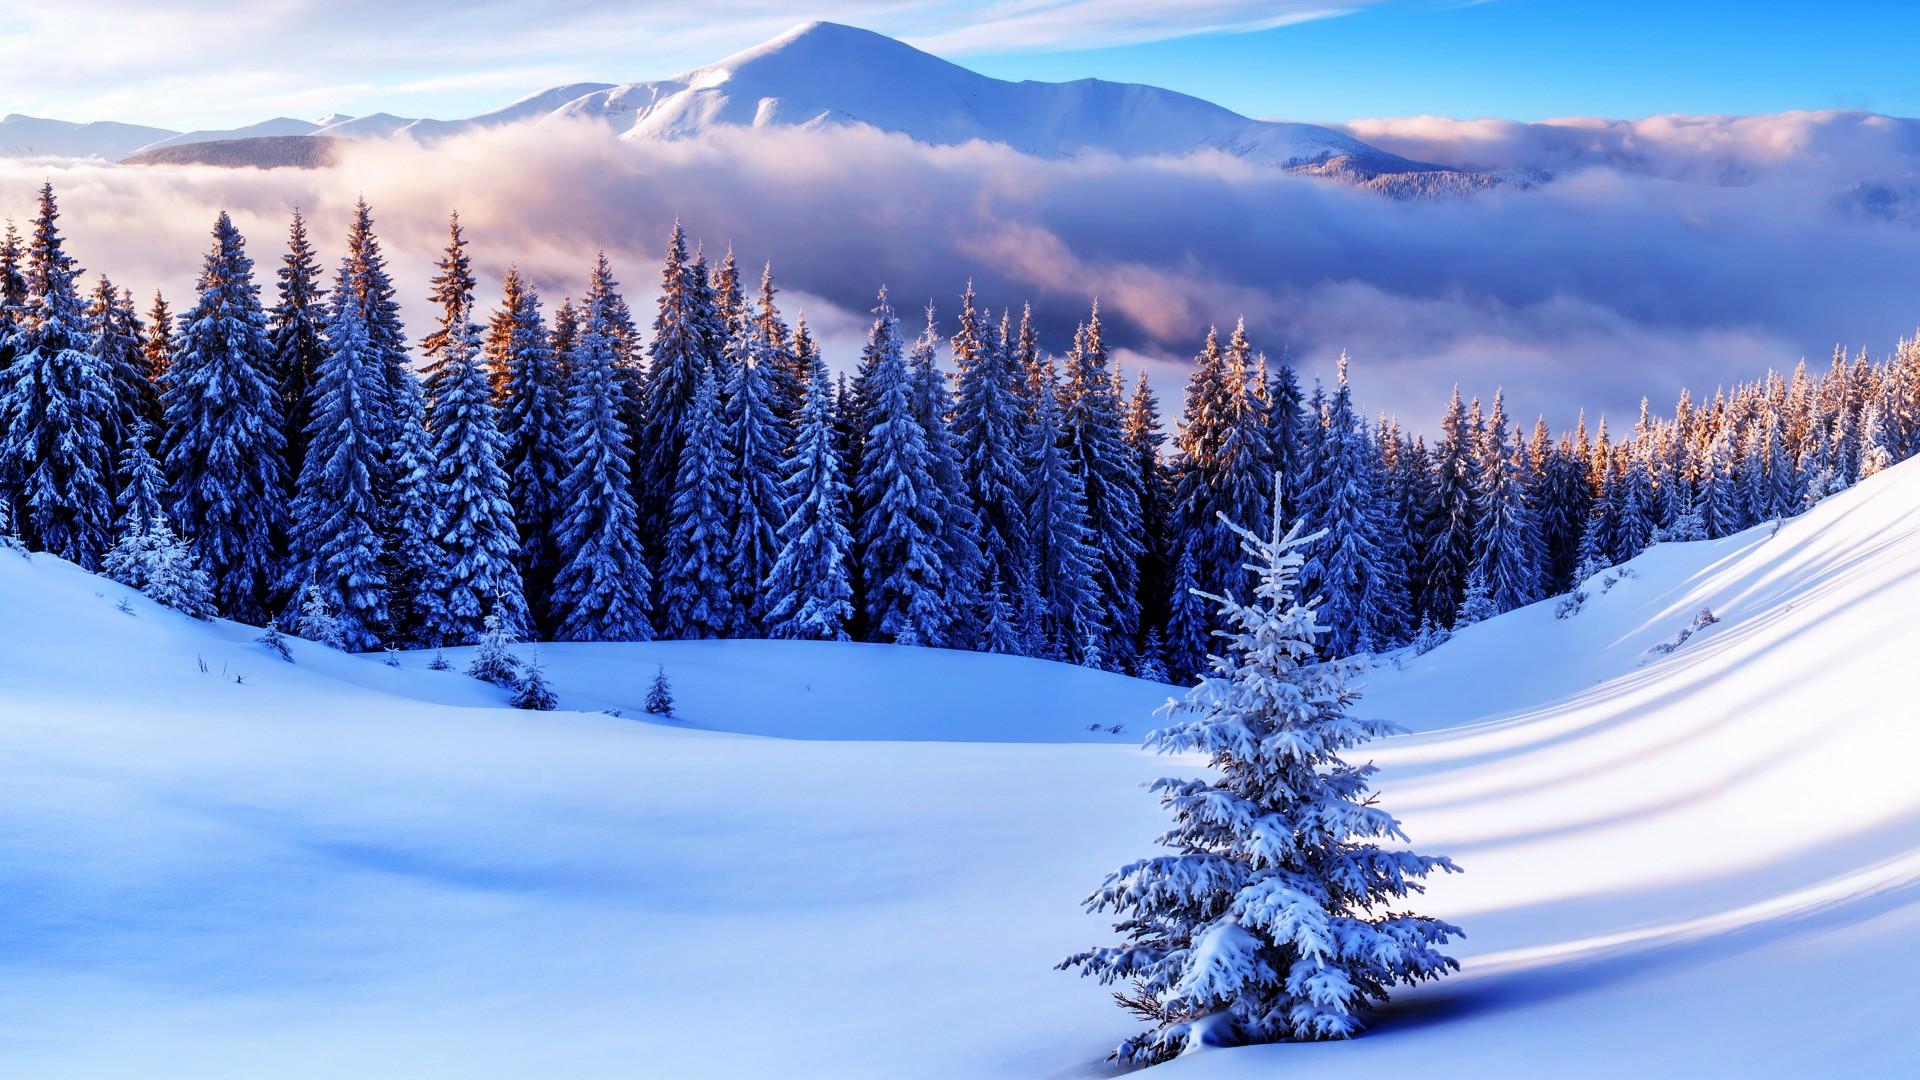 林海雪原 雪山风景 冬天的图片 风景桌面壁纸